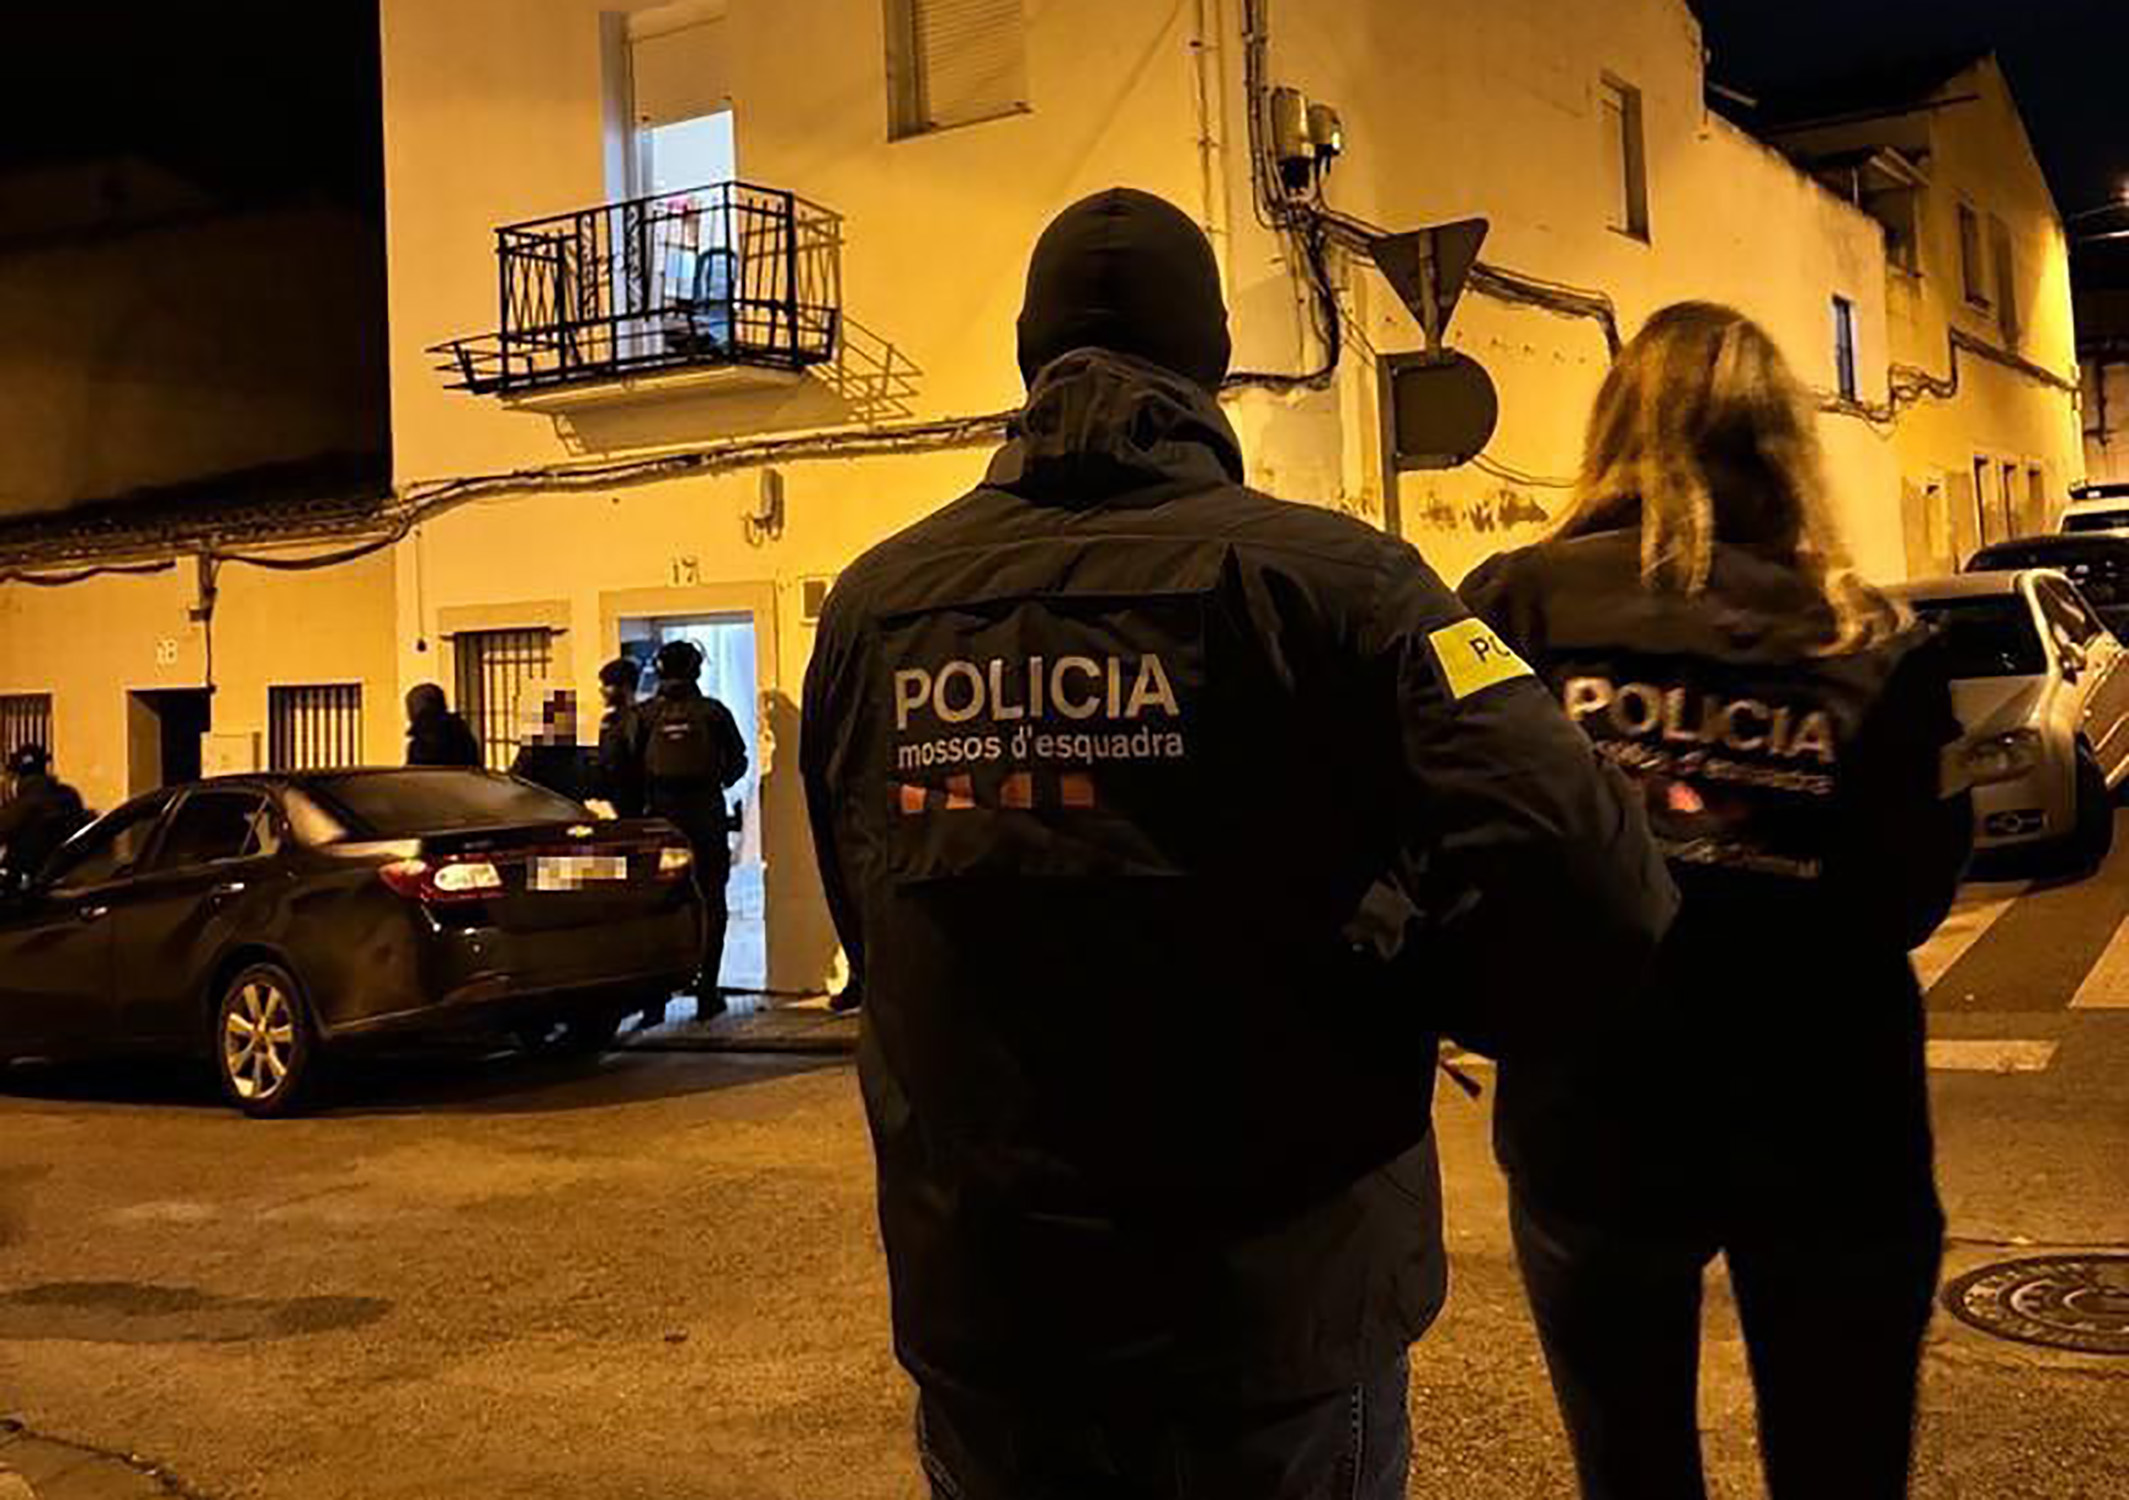 Operació antiterrorista gihadista amb epicentre a Catalunya amb cinc detinguts: tenien intenció d'atemptar